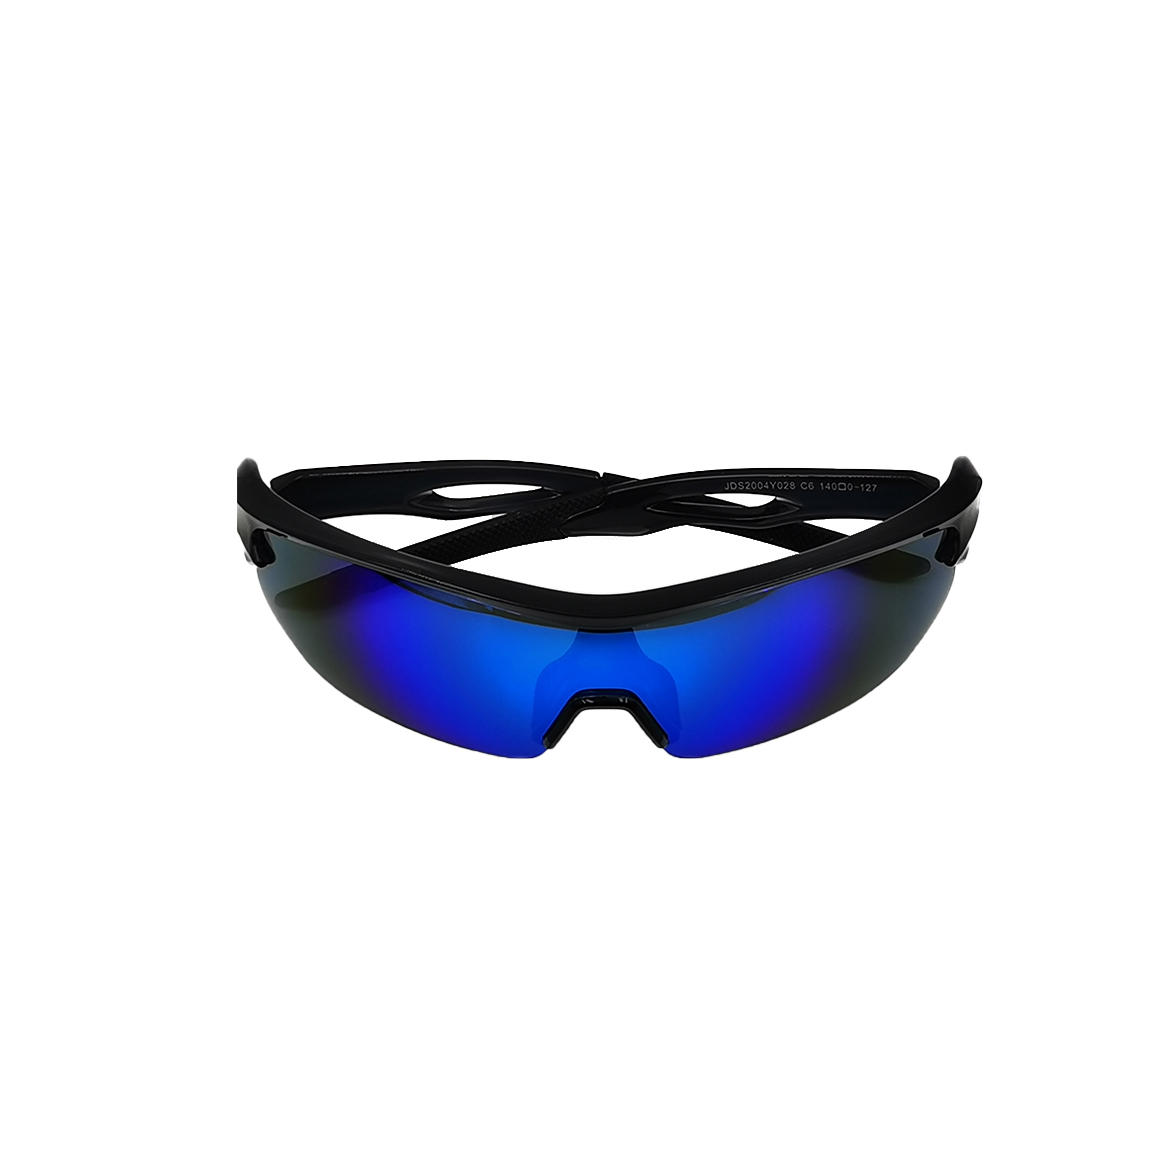 Entwerfen Sie individuelle Logo-Marken-UV400-polarisierte Sonnenbrillen zum Radfahren, Skifahren, Fahren, winddichte Brillen, Sport-Sonnenbrillen